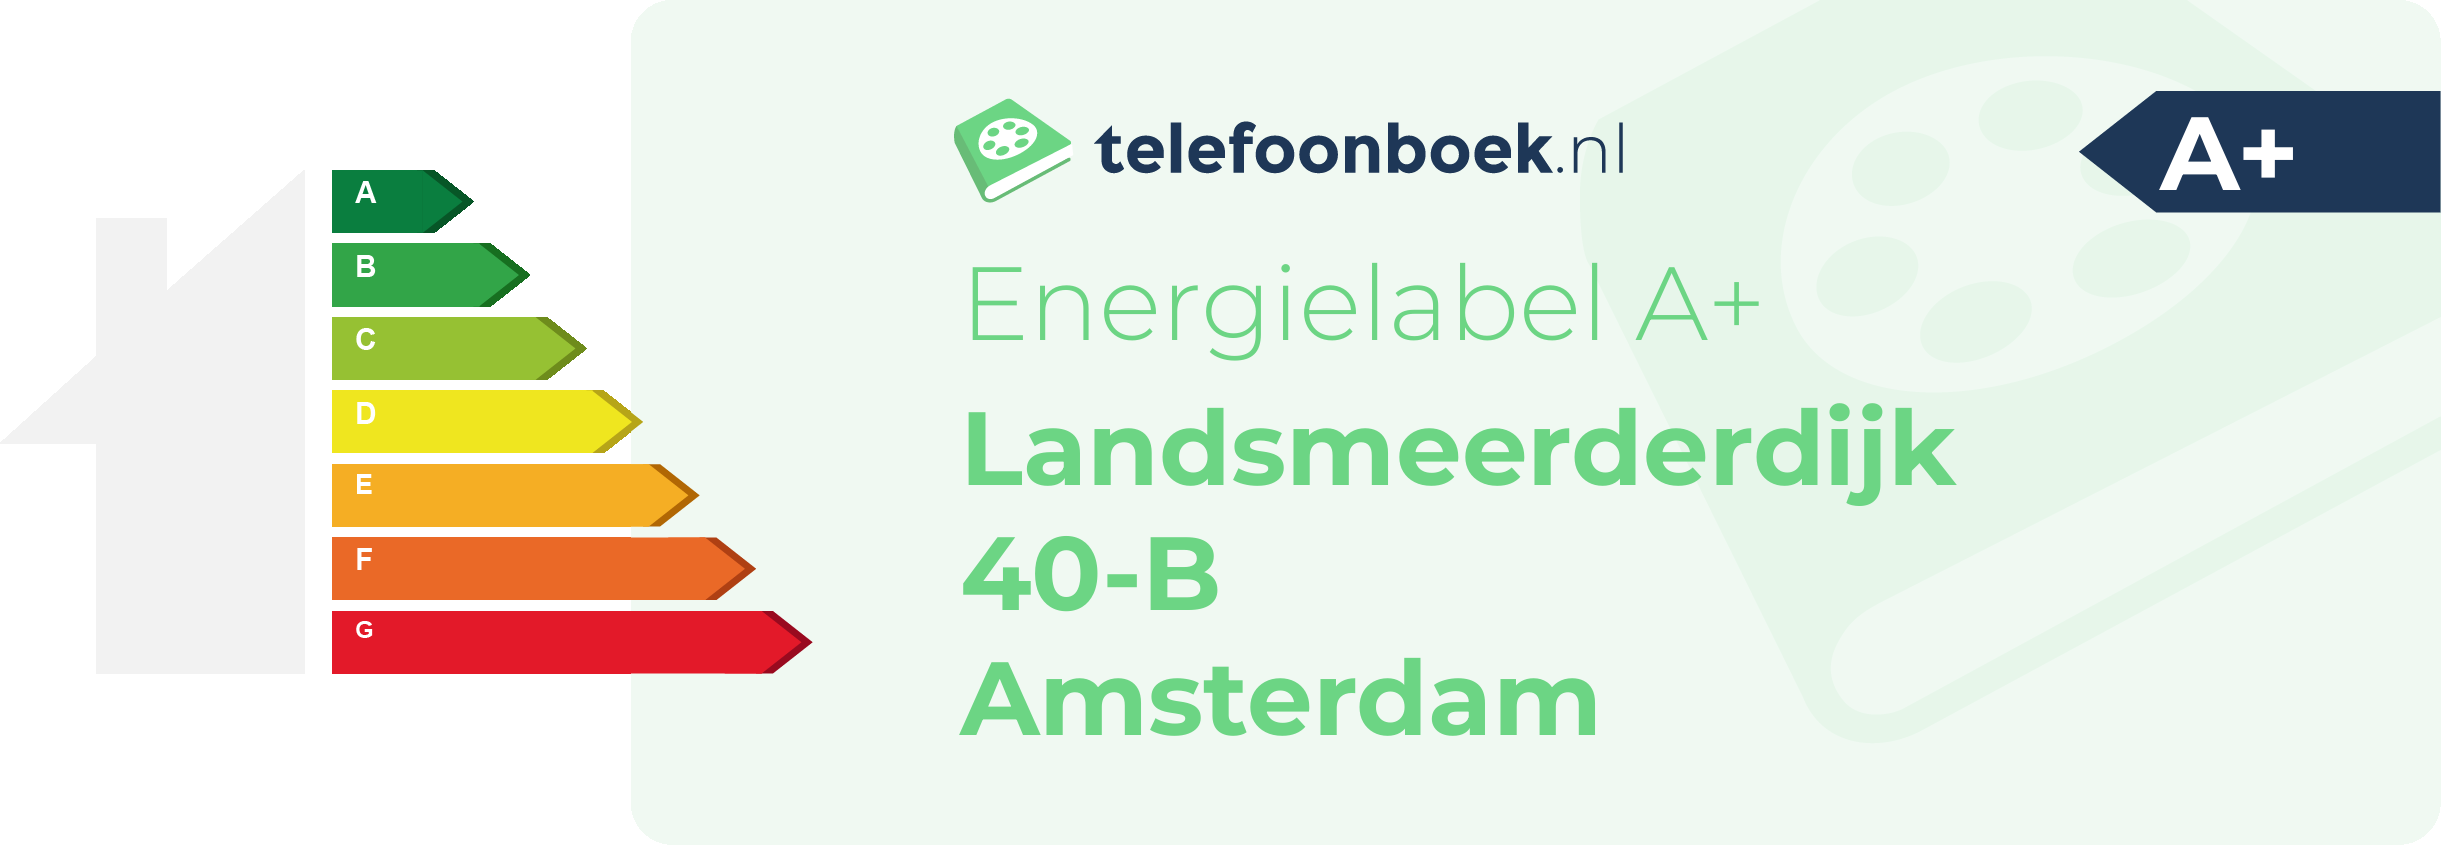 Energielabel Landsmeerderdijk 40-B Amsterdam